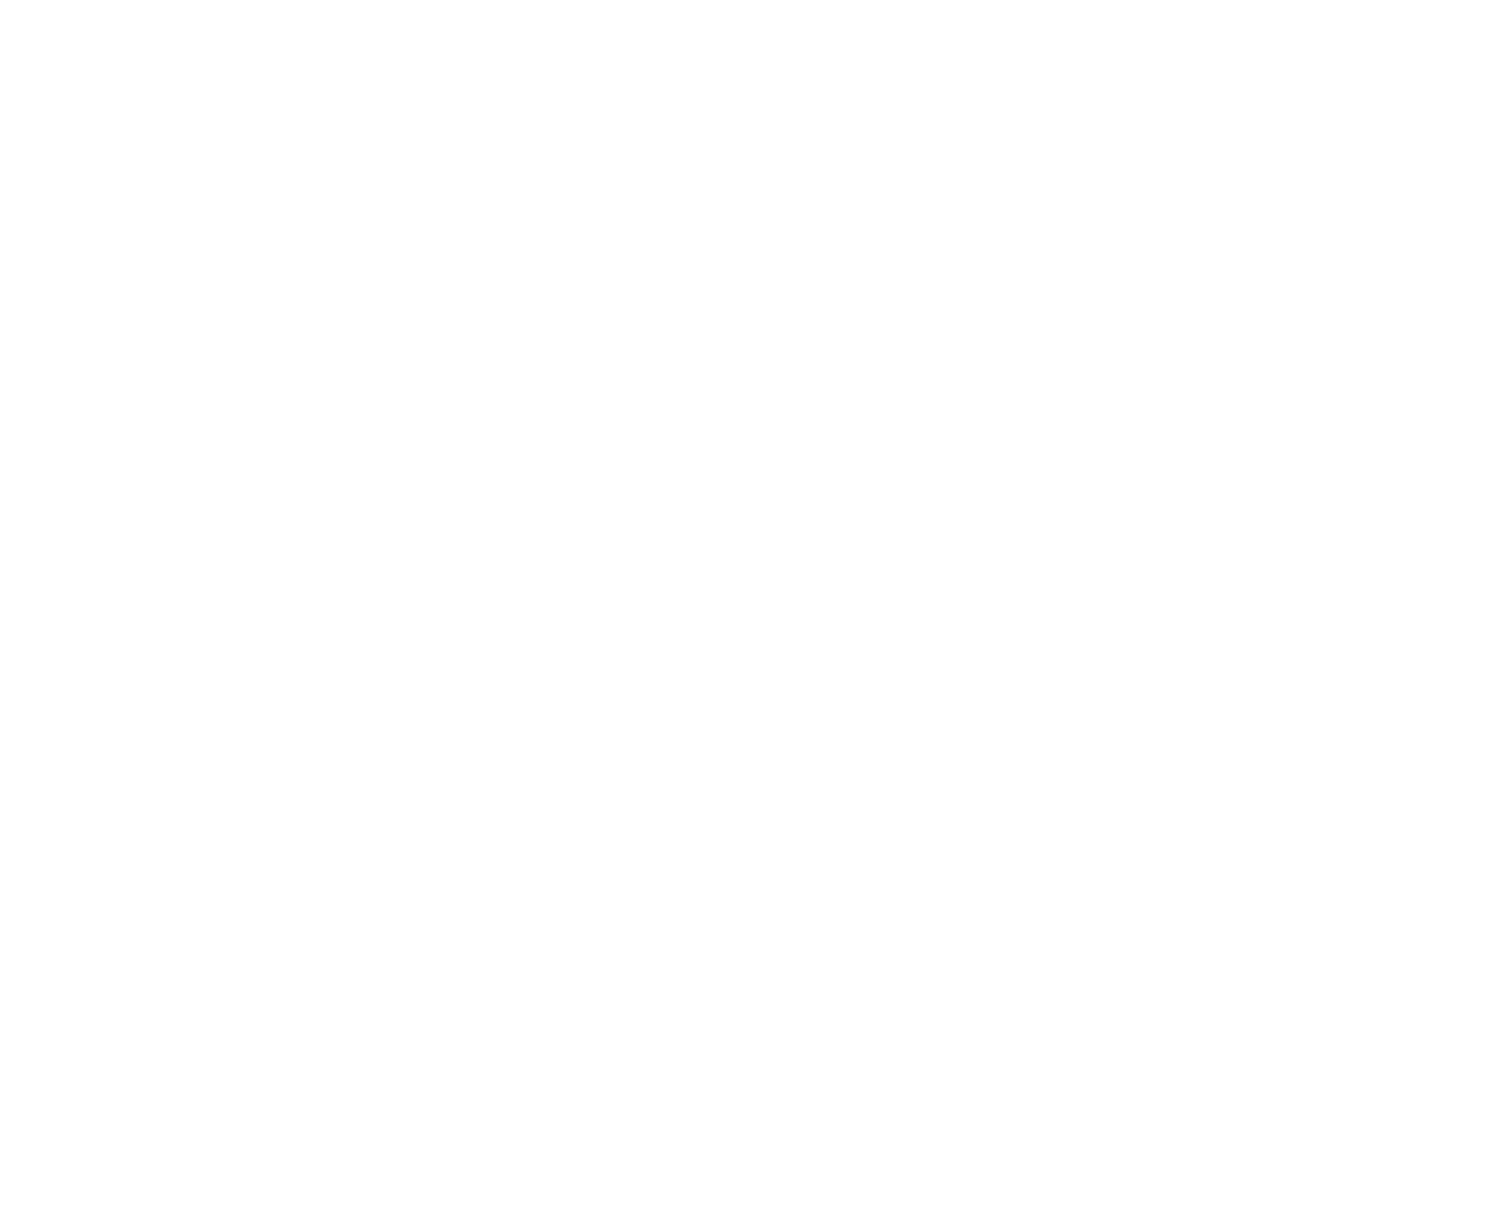 Lands for Biological Diversity